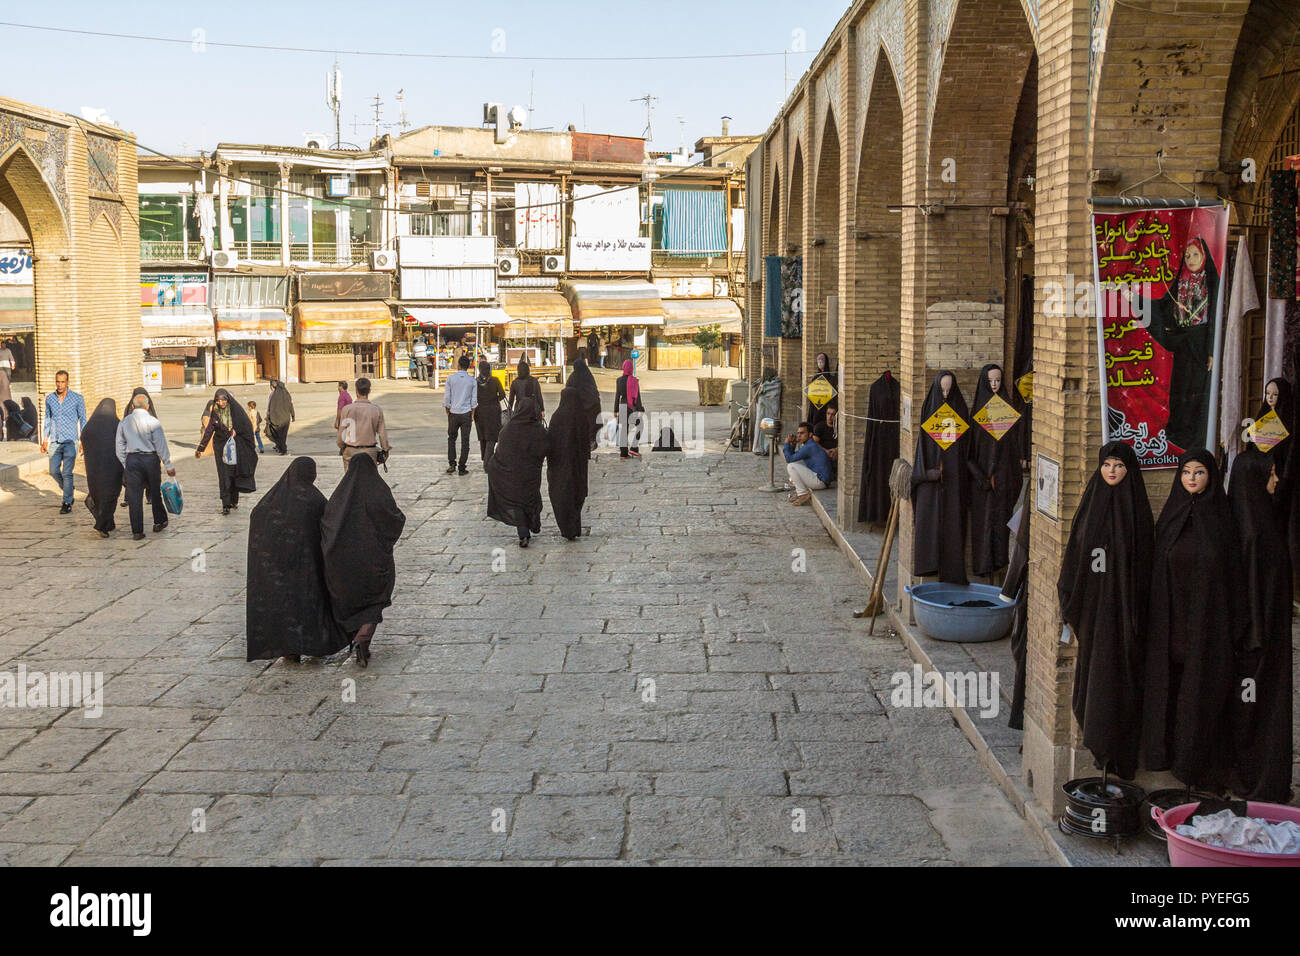 ISFAHAN, IRAN - 20. AUGUST 2016: Frauen in islamischen Bescheidene Kleidung vorbei an den Geschäften der Islamischen outfit Verkäufer schwarzes Kopftuch, Schleier und Stockfoto